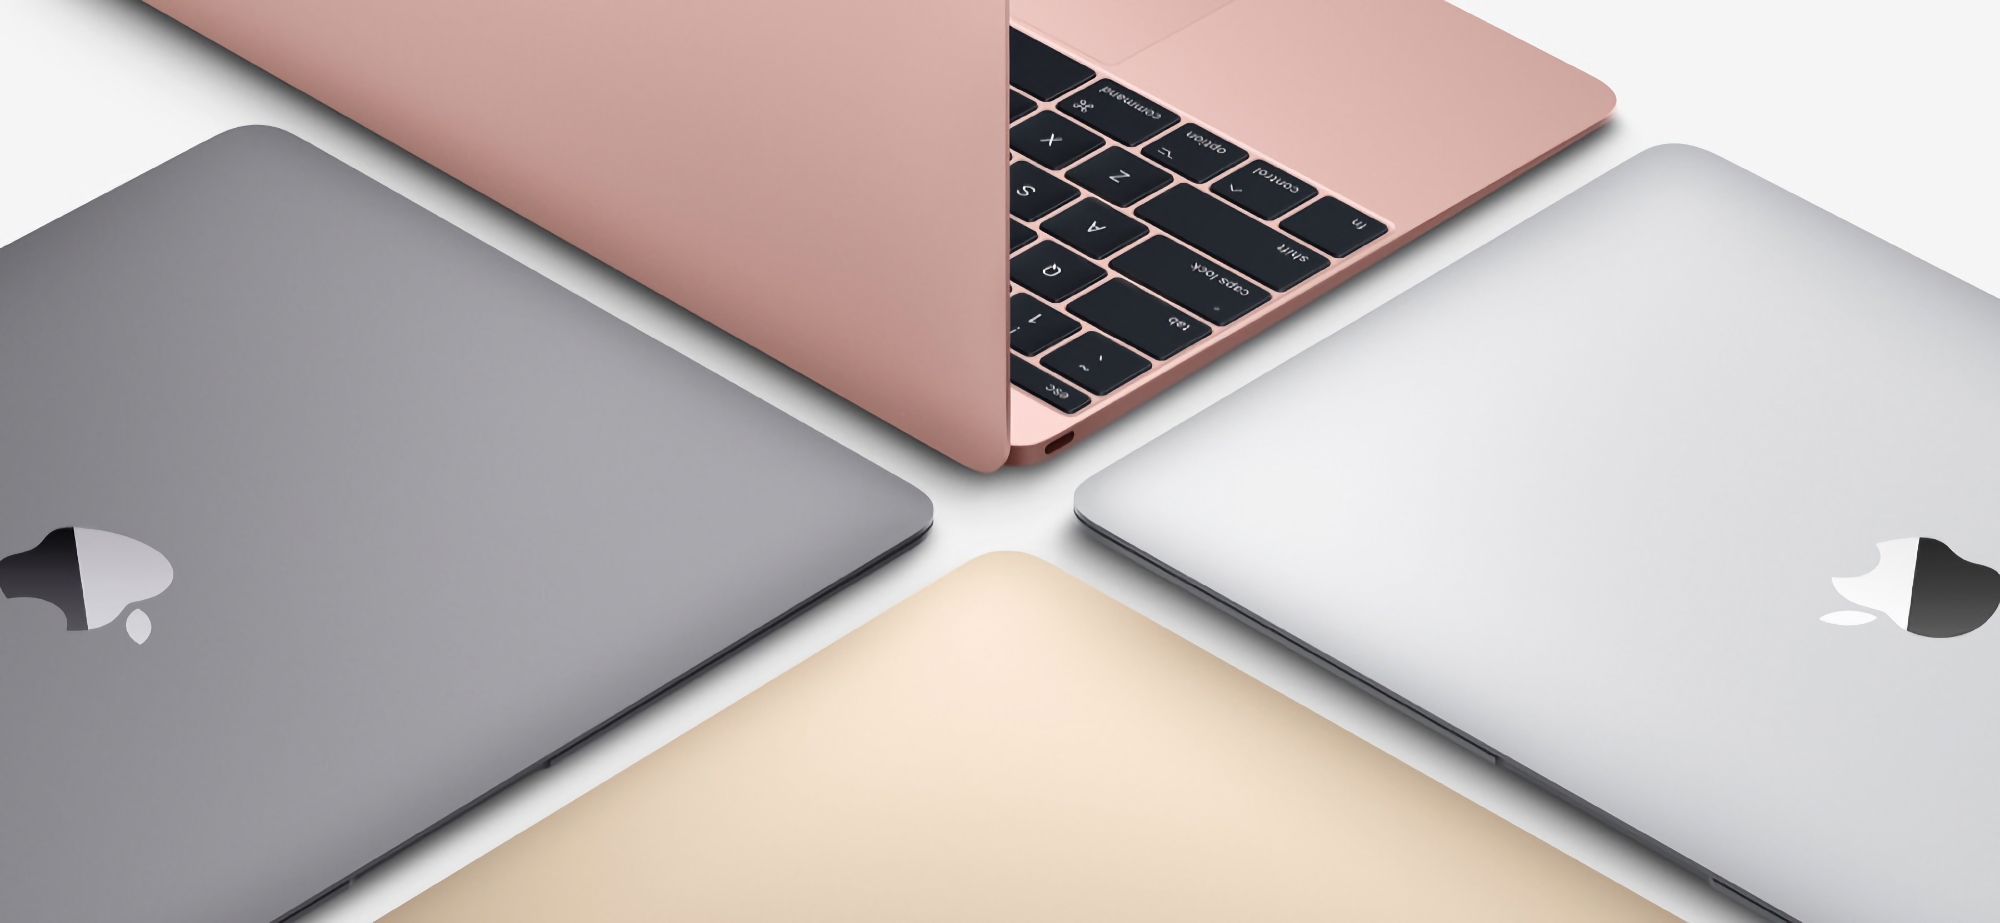 Gerücht: Apple arbeitet an einem Budget-MacBook, die Neuheit wird in zwei Versionen auf den Markt kommen und rund 700 Dollar kosten